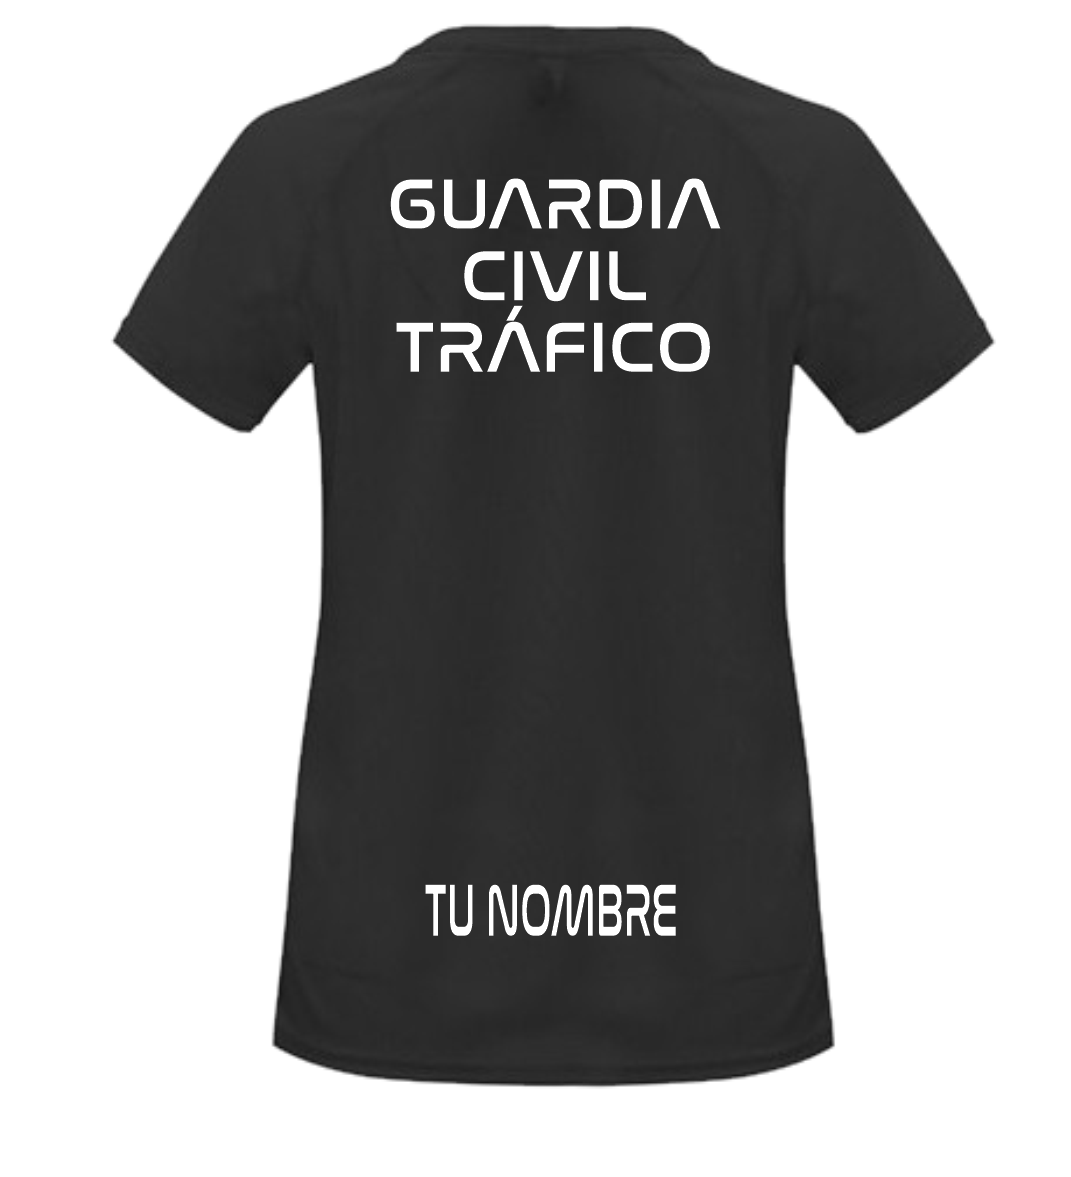 Camiseta Guardia Civil Tráfico